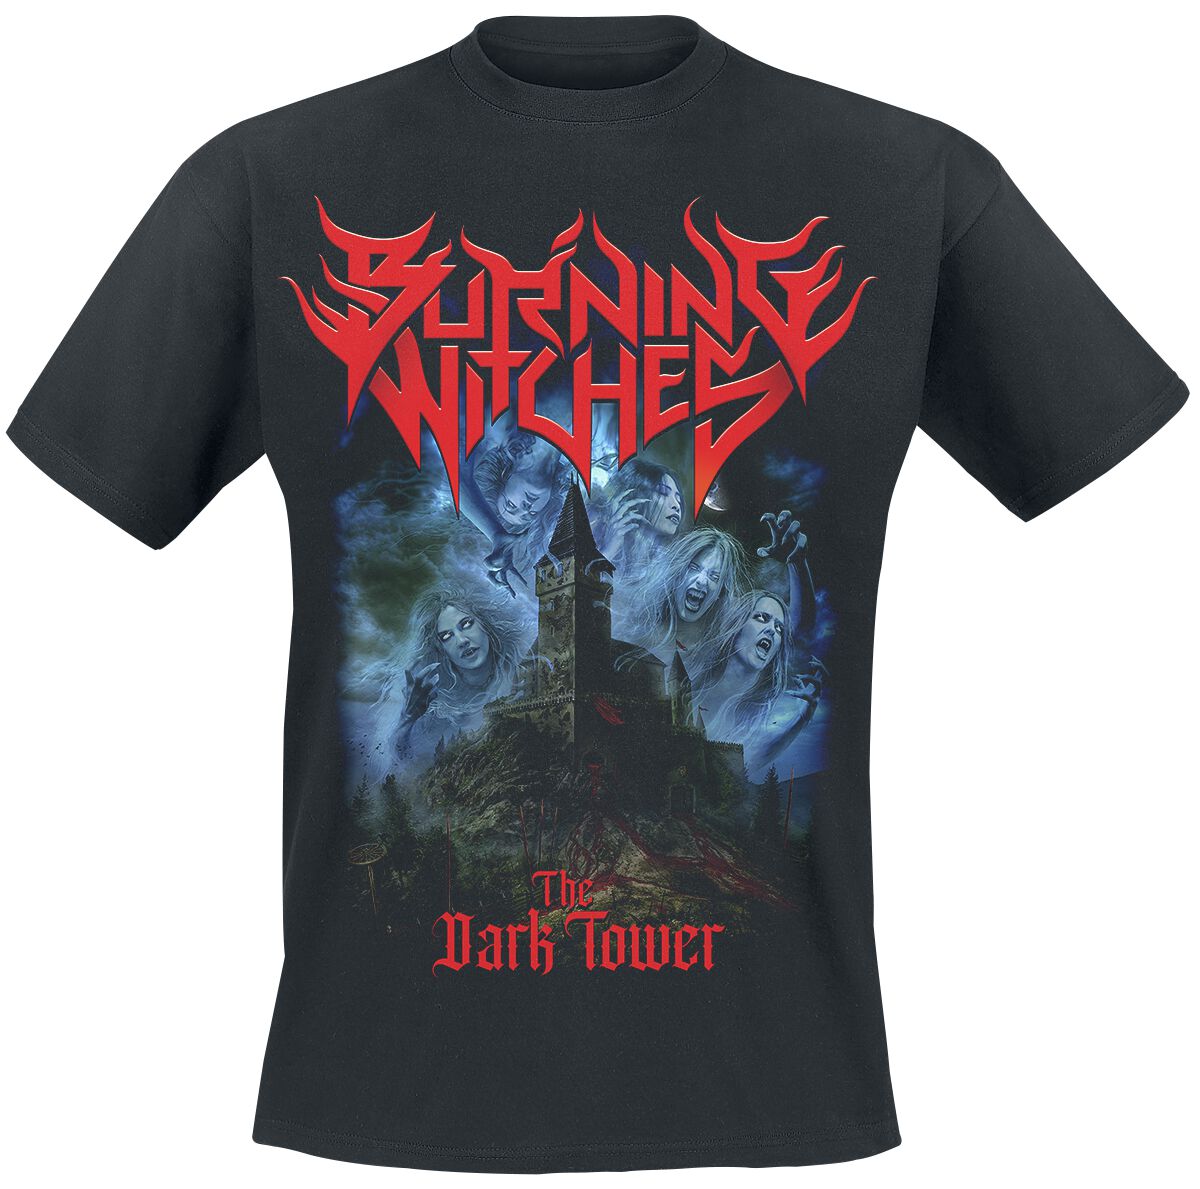 Burning Witches T-Shirt - The Dark Tower - S bis 4XL - für Männer - Größe XXL - schwarz  - Lizenziertes Merchandise!